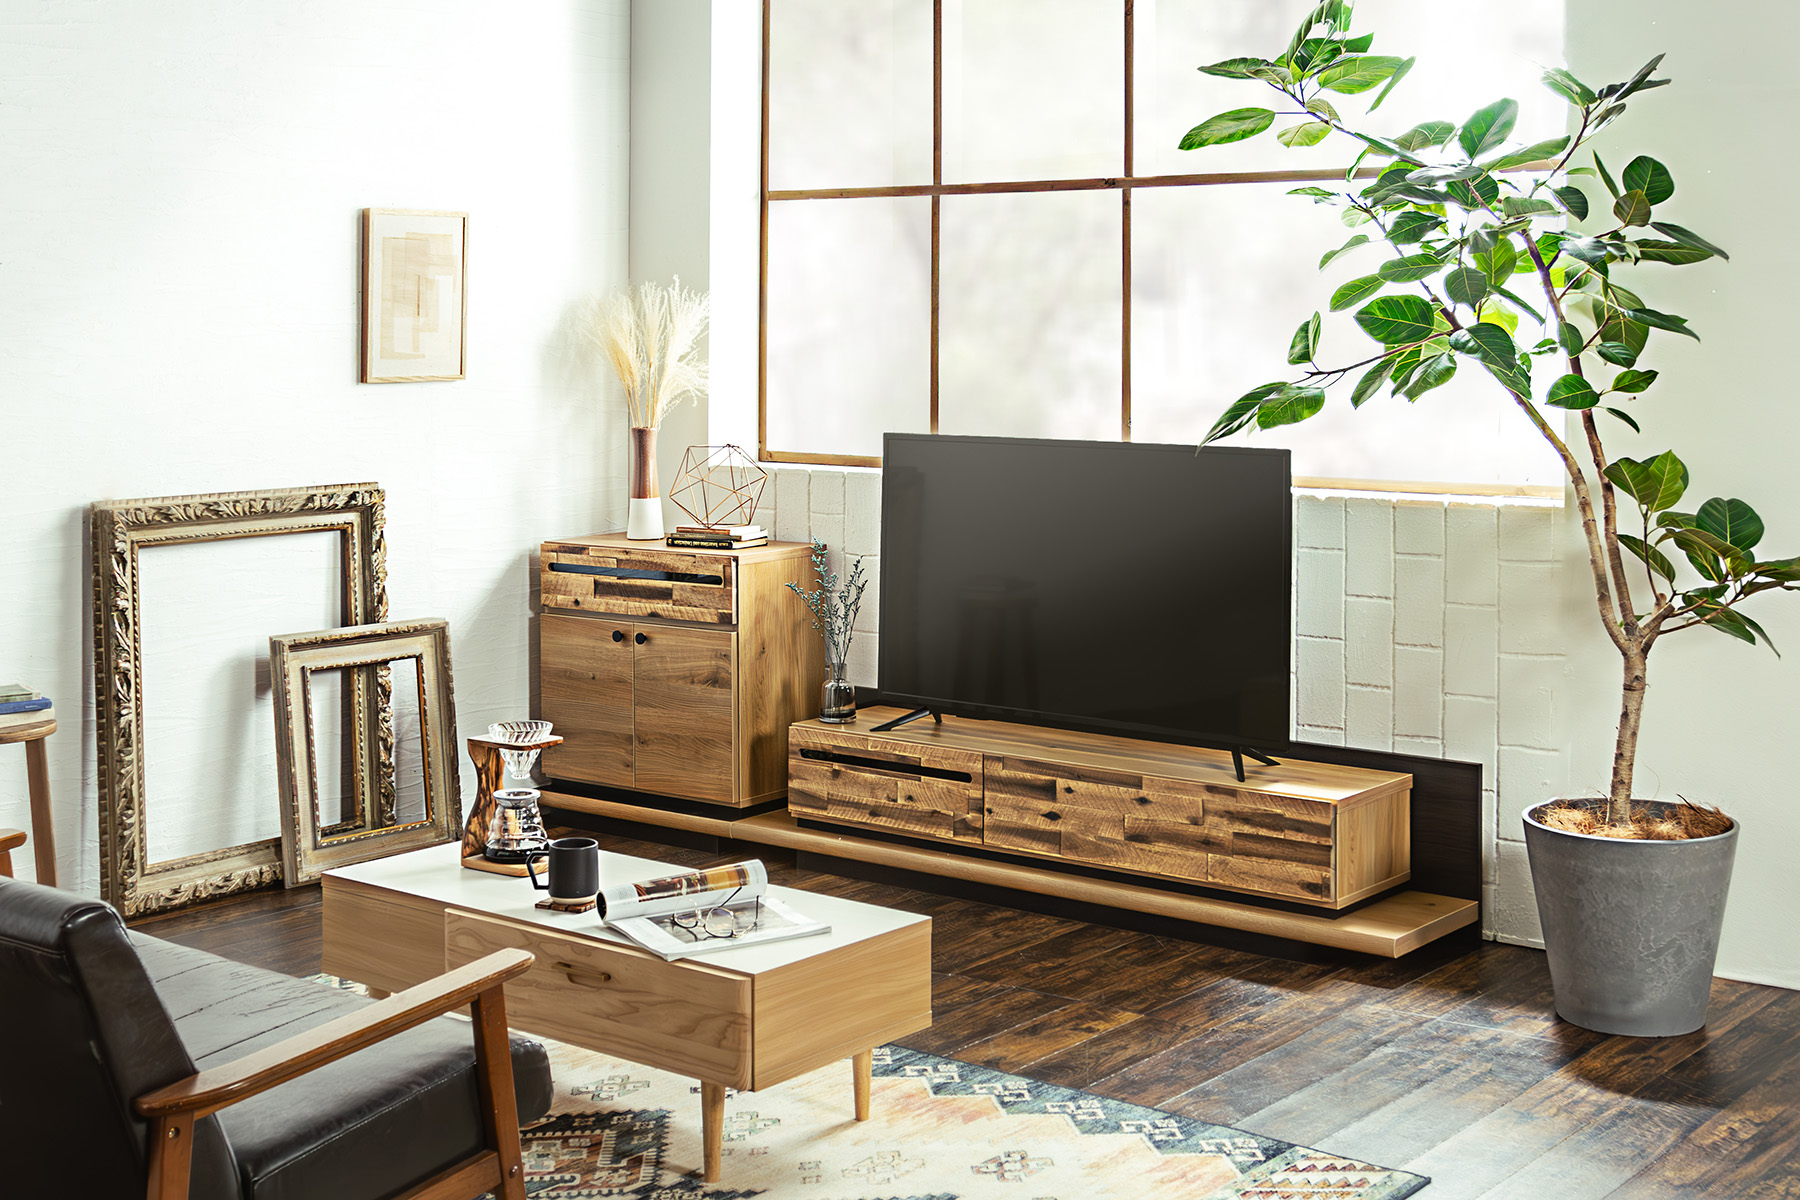 テレビボード | (株)東馬-tohma- インテリアメーカー家具の卸販売,製造 